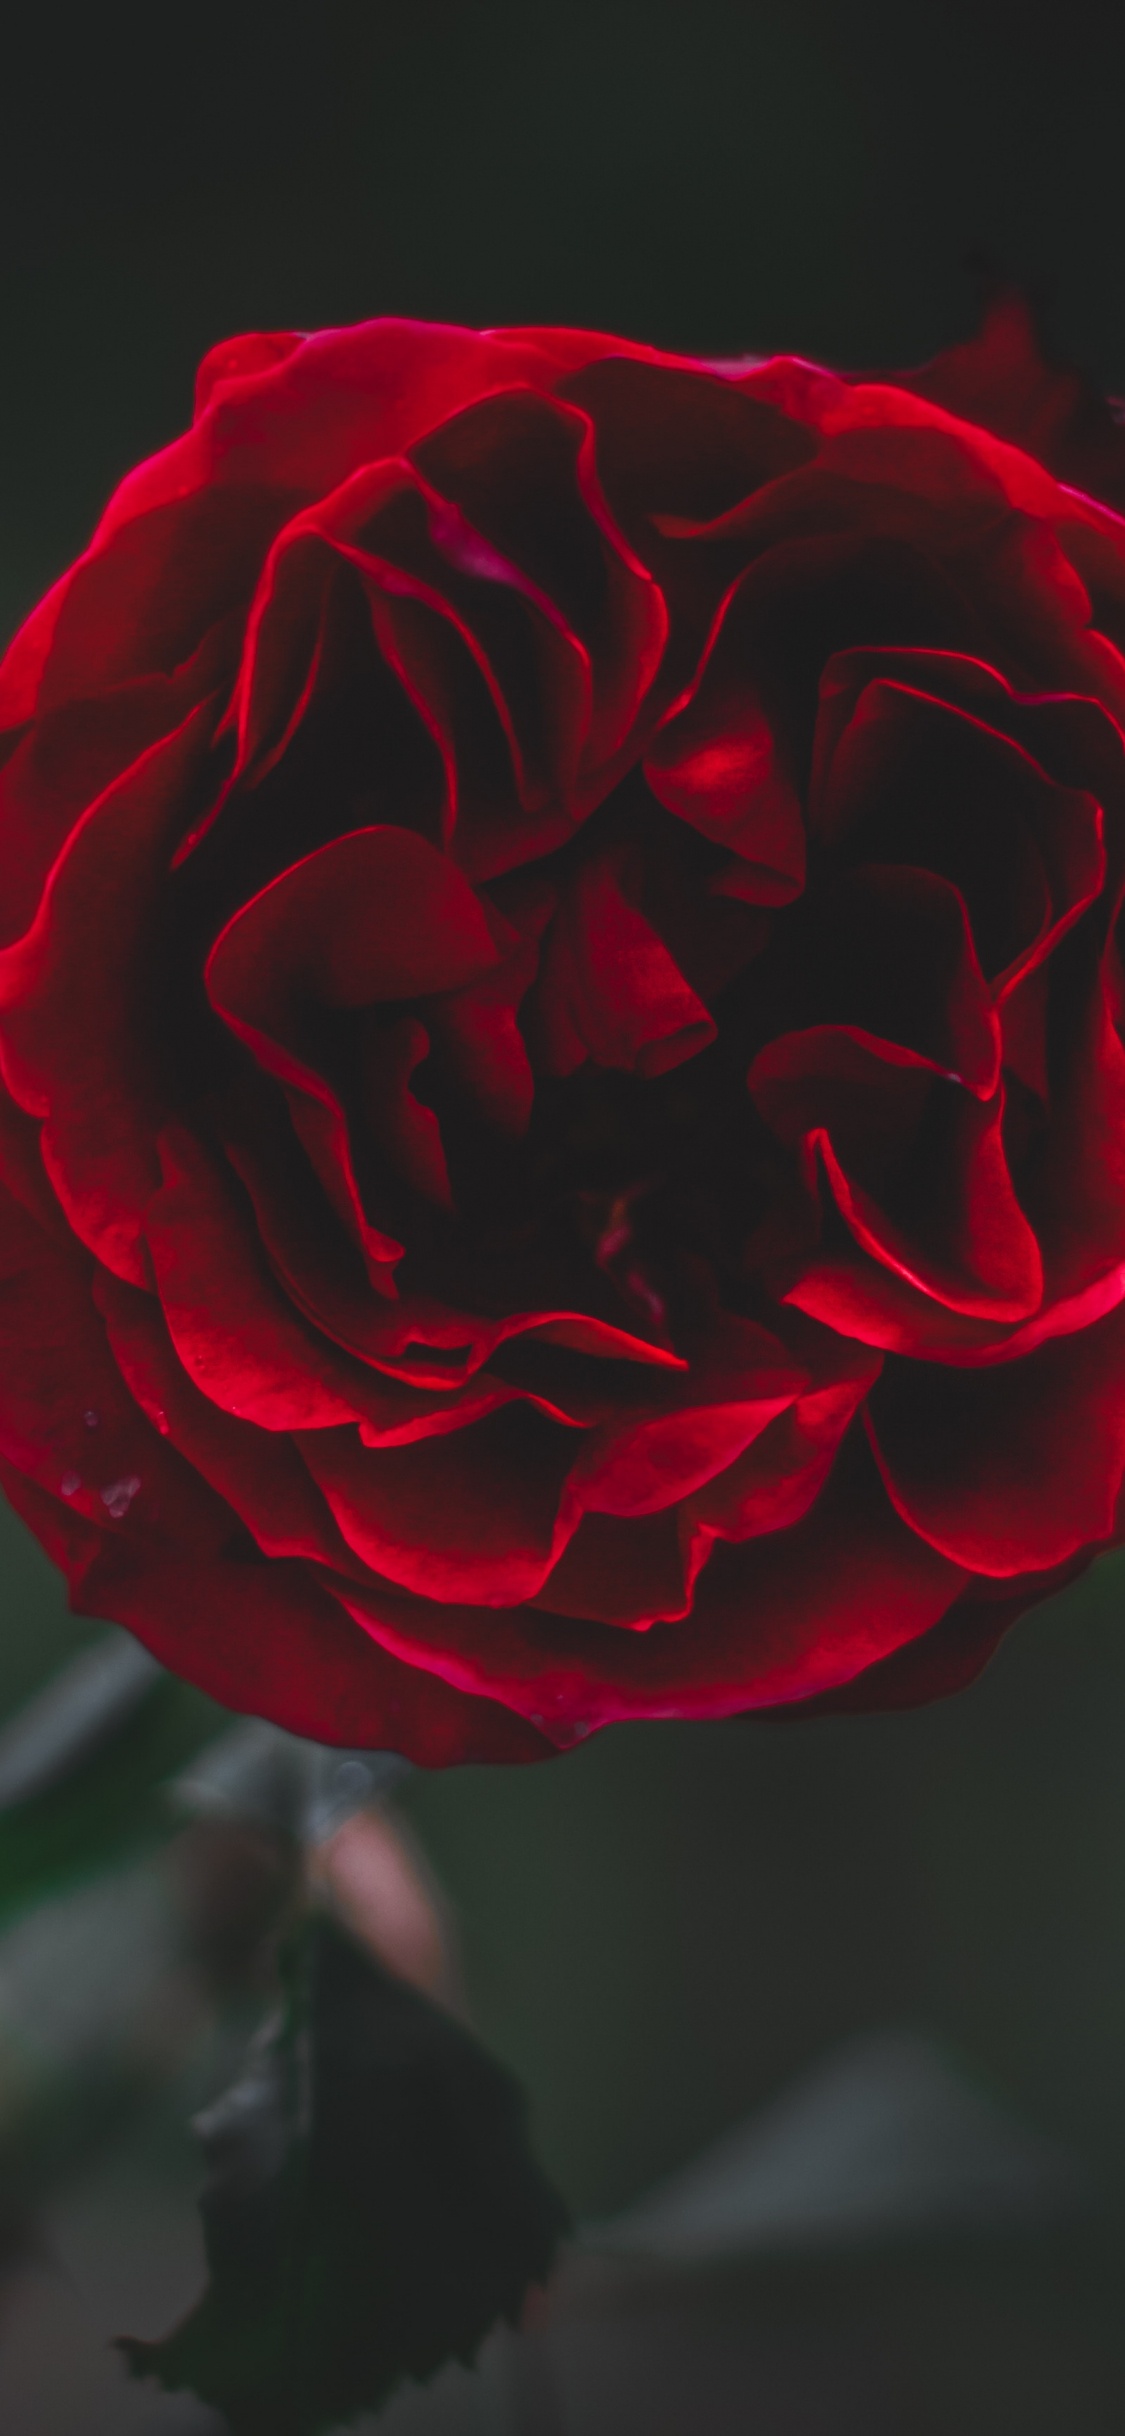 Rosa Roja en Flor en Fotografía de Cerca. Wallpaper in 1125x2436 Resolution